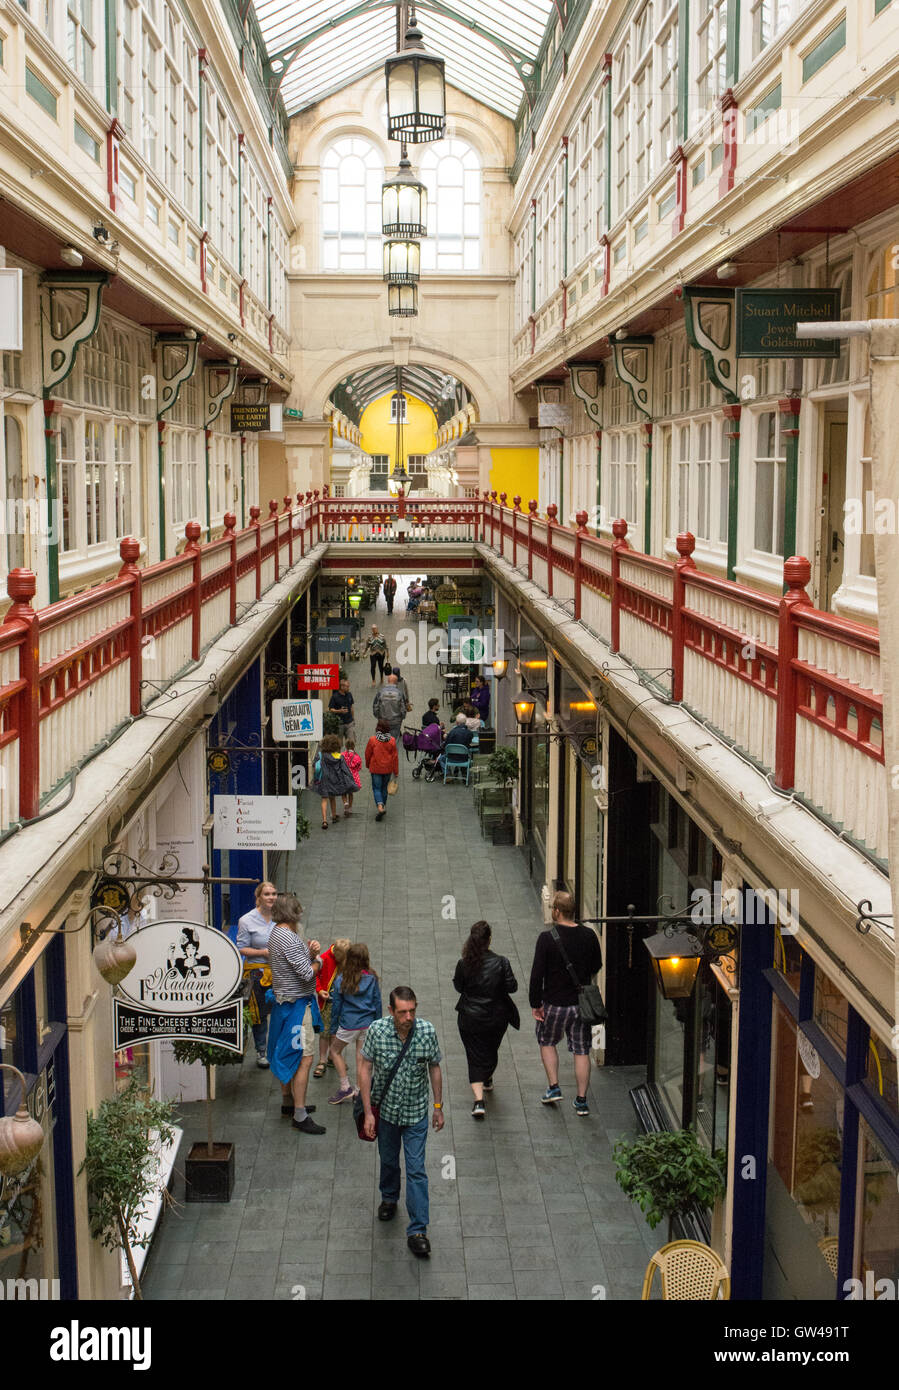 Auf dem Balkon von zwei Ebene Victorian Castle Arcade, Cardiff, Wales, UK hält ein beliebter Ort zum Einkaufen und Kaffee. Stockfoto